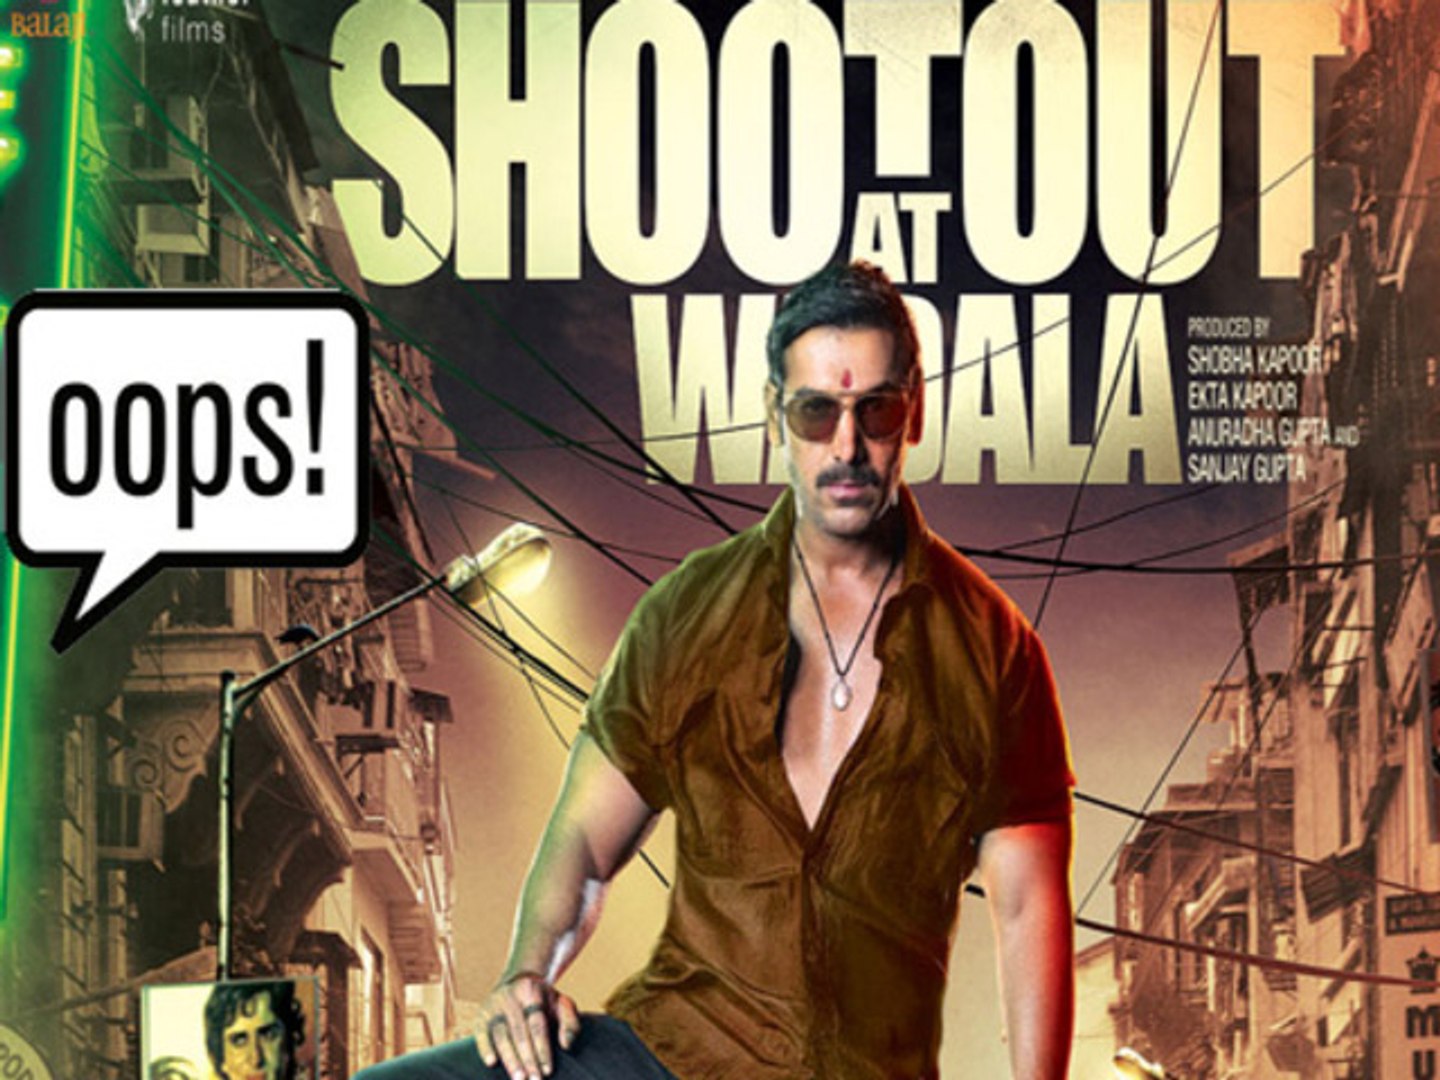 Shootout At Wadala Full Movie